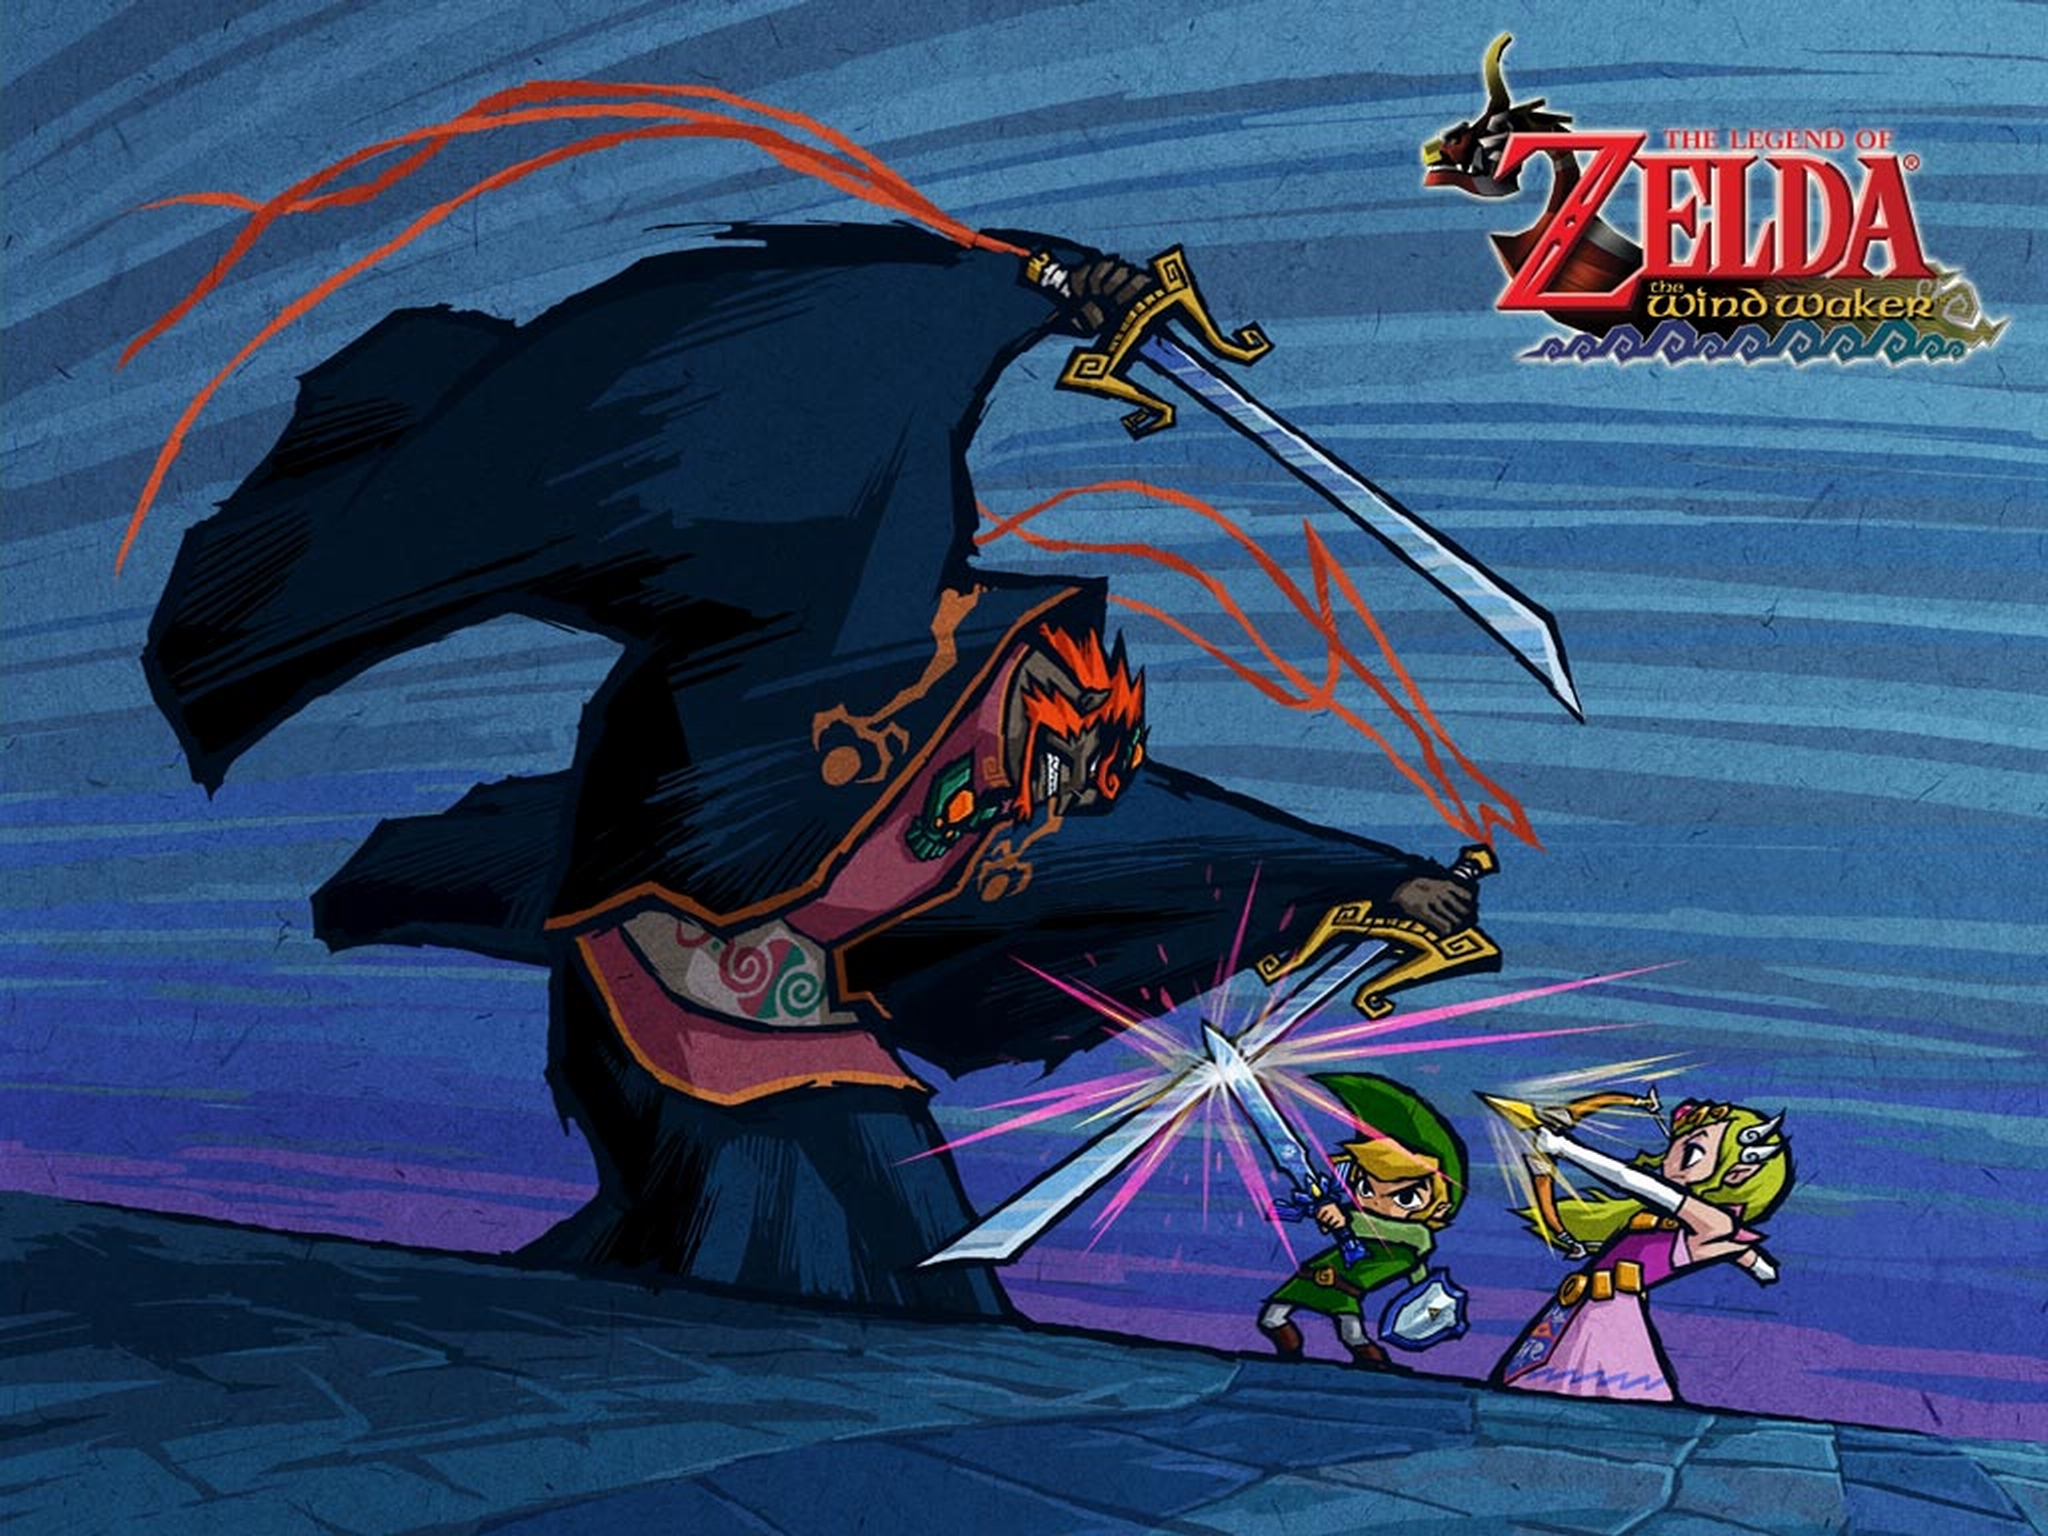 the legend of zelda: the wind waker, video game, ganondorf, link, zelda